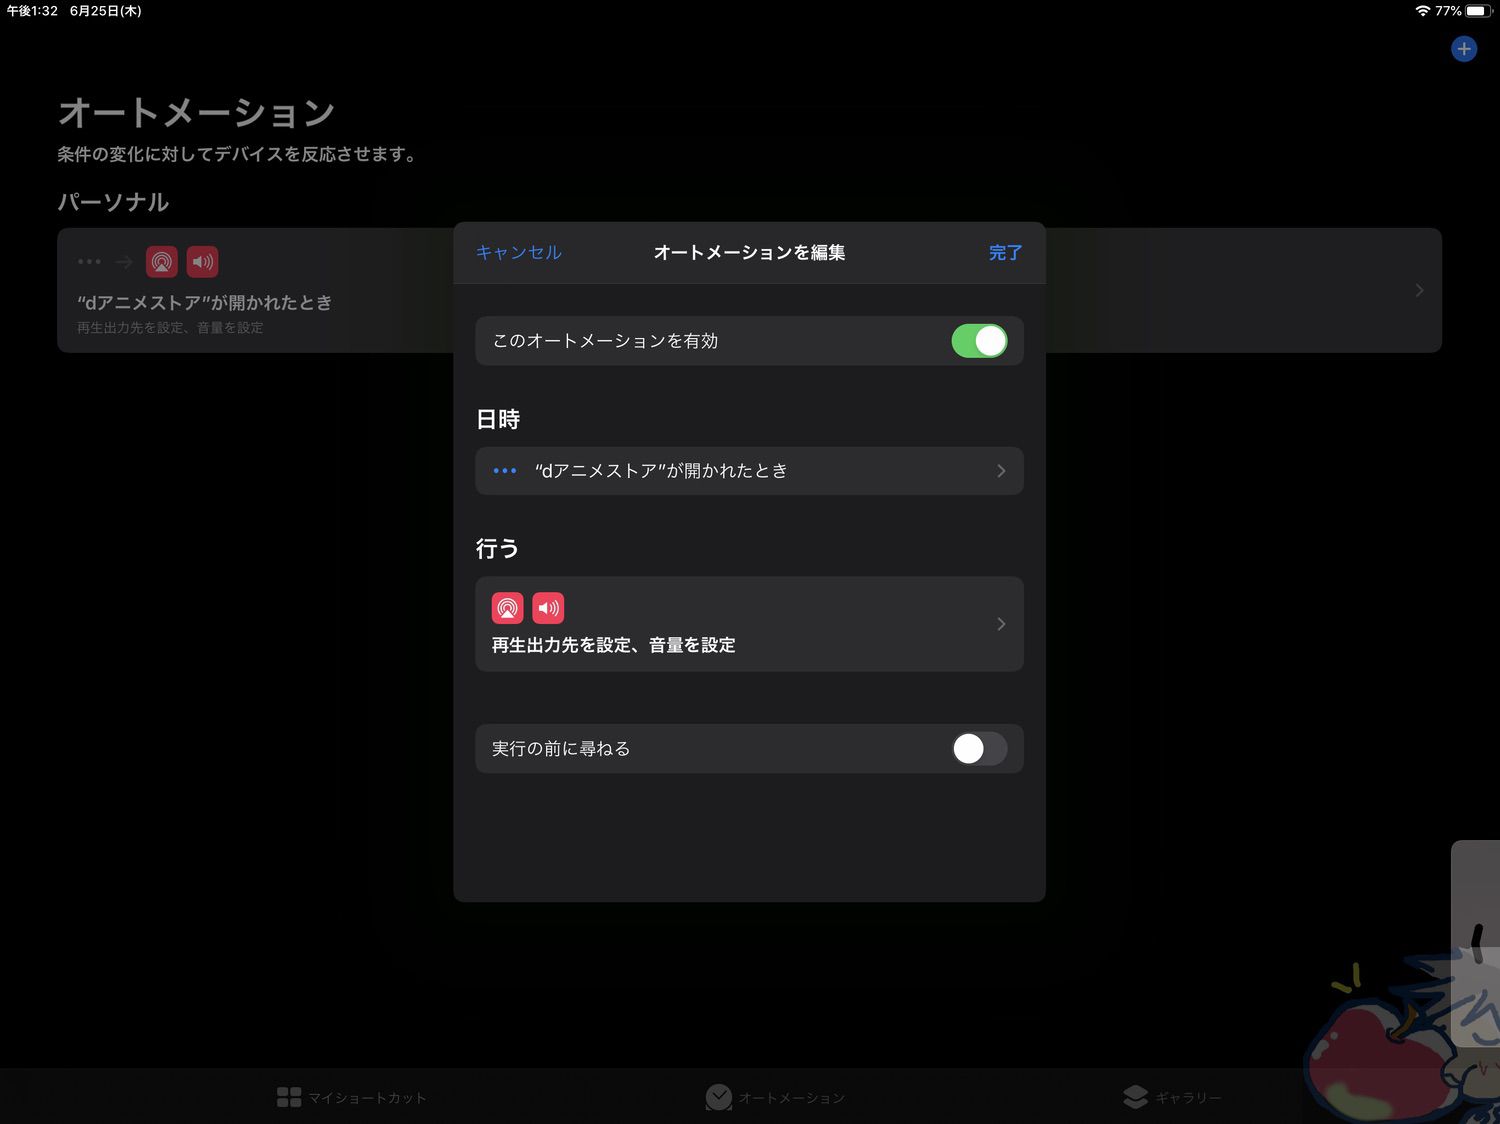 【オートメーション】動画配信アプリ起動 + AirPods接続を自動化する設定